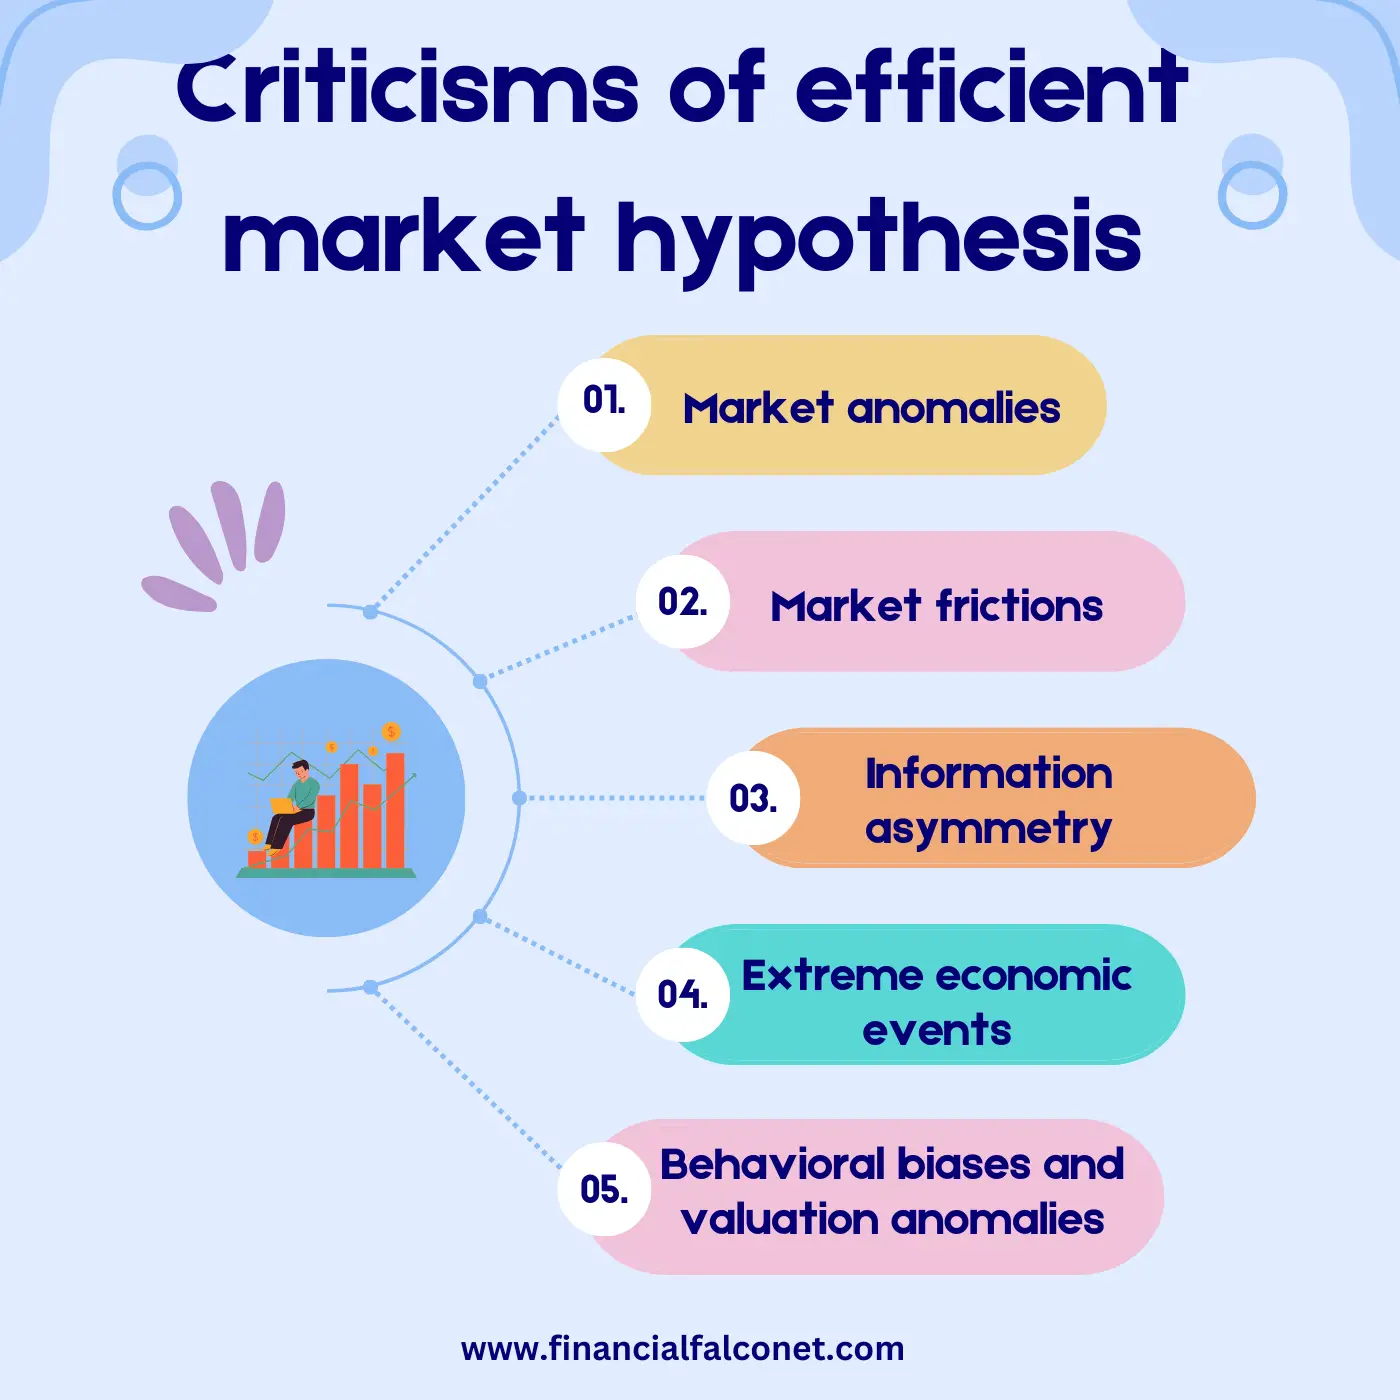 Criticism of efficient market hypothesis